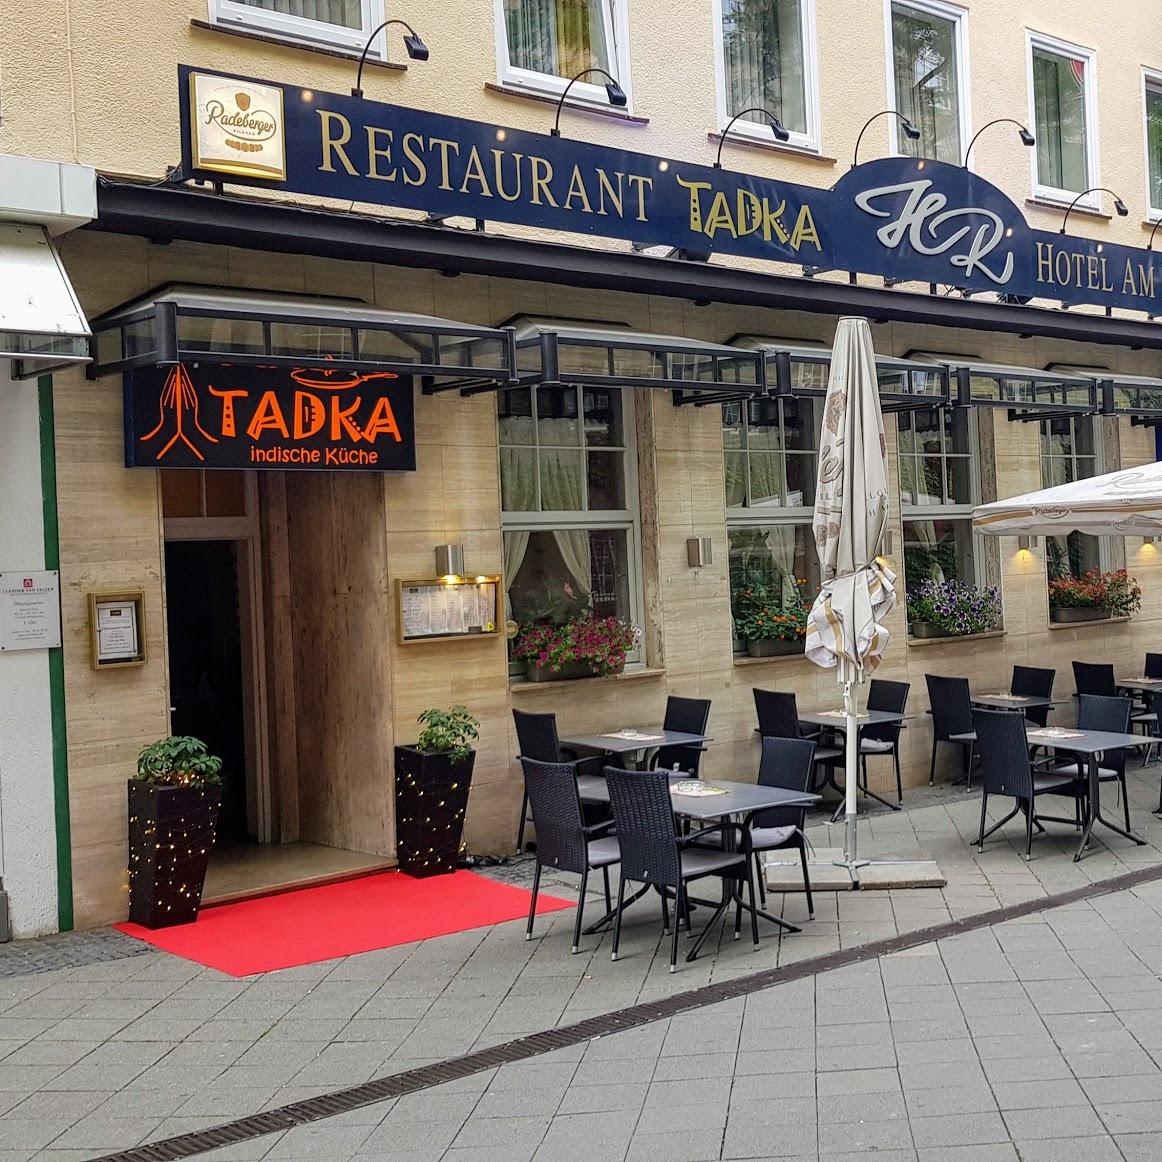 Restaurant "Restaurant Tadka" in Kassel